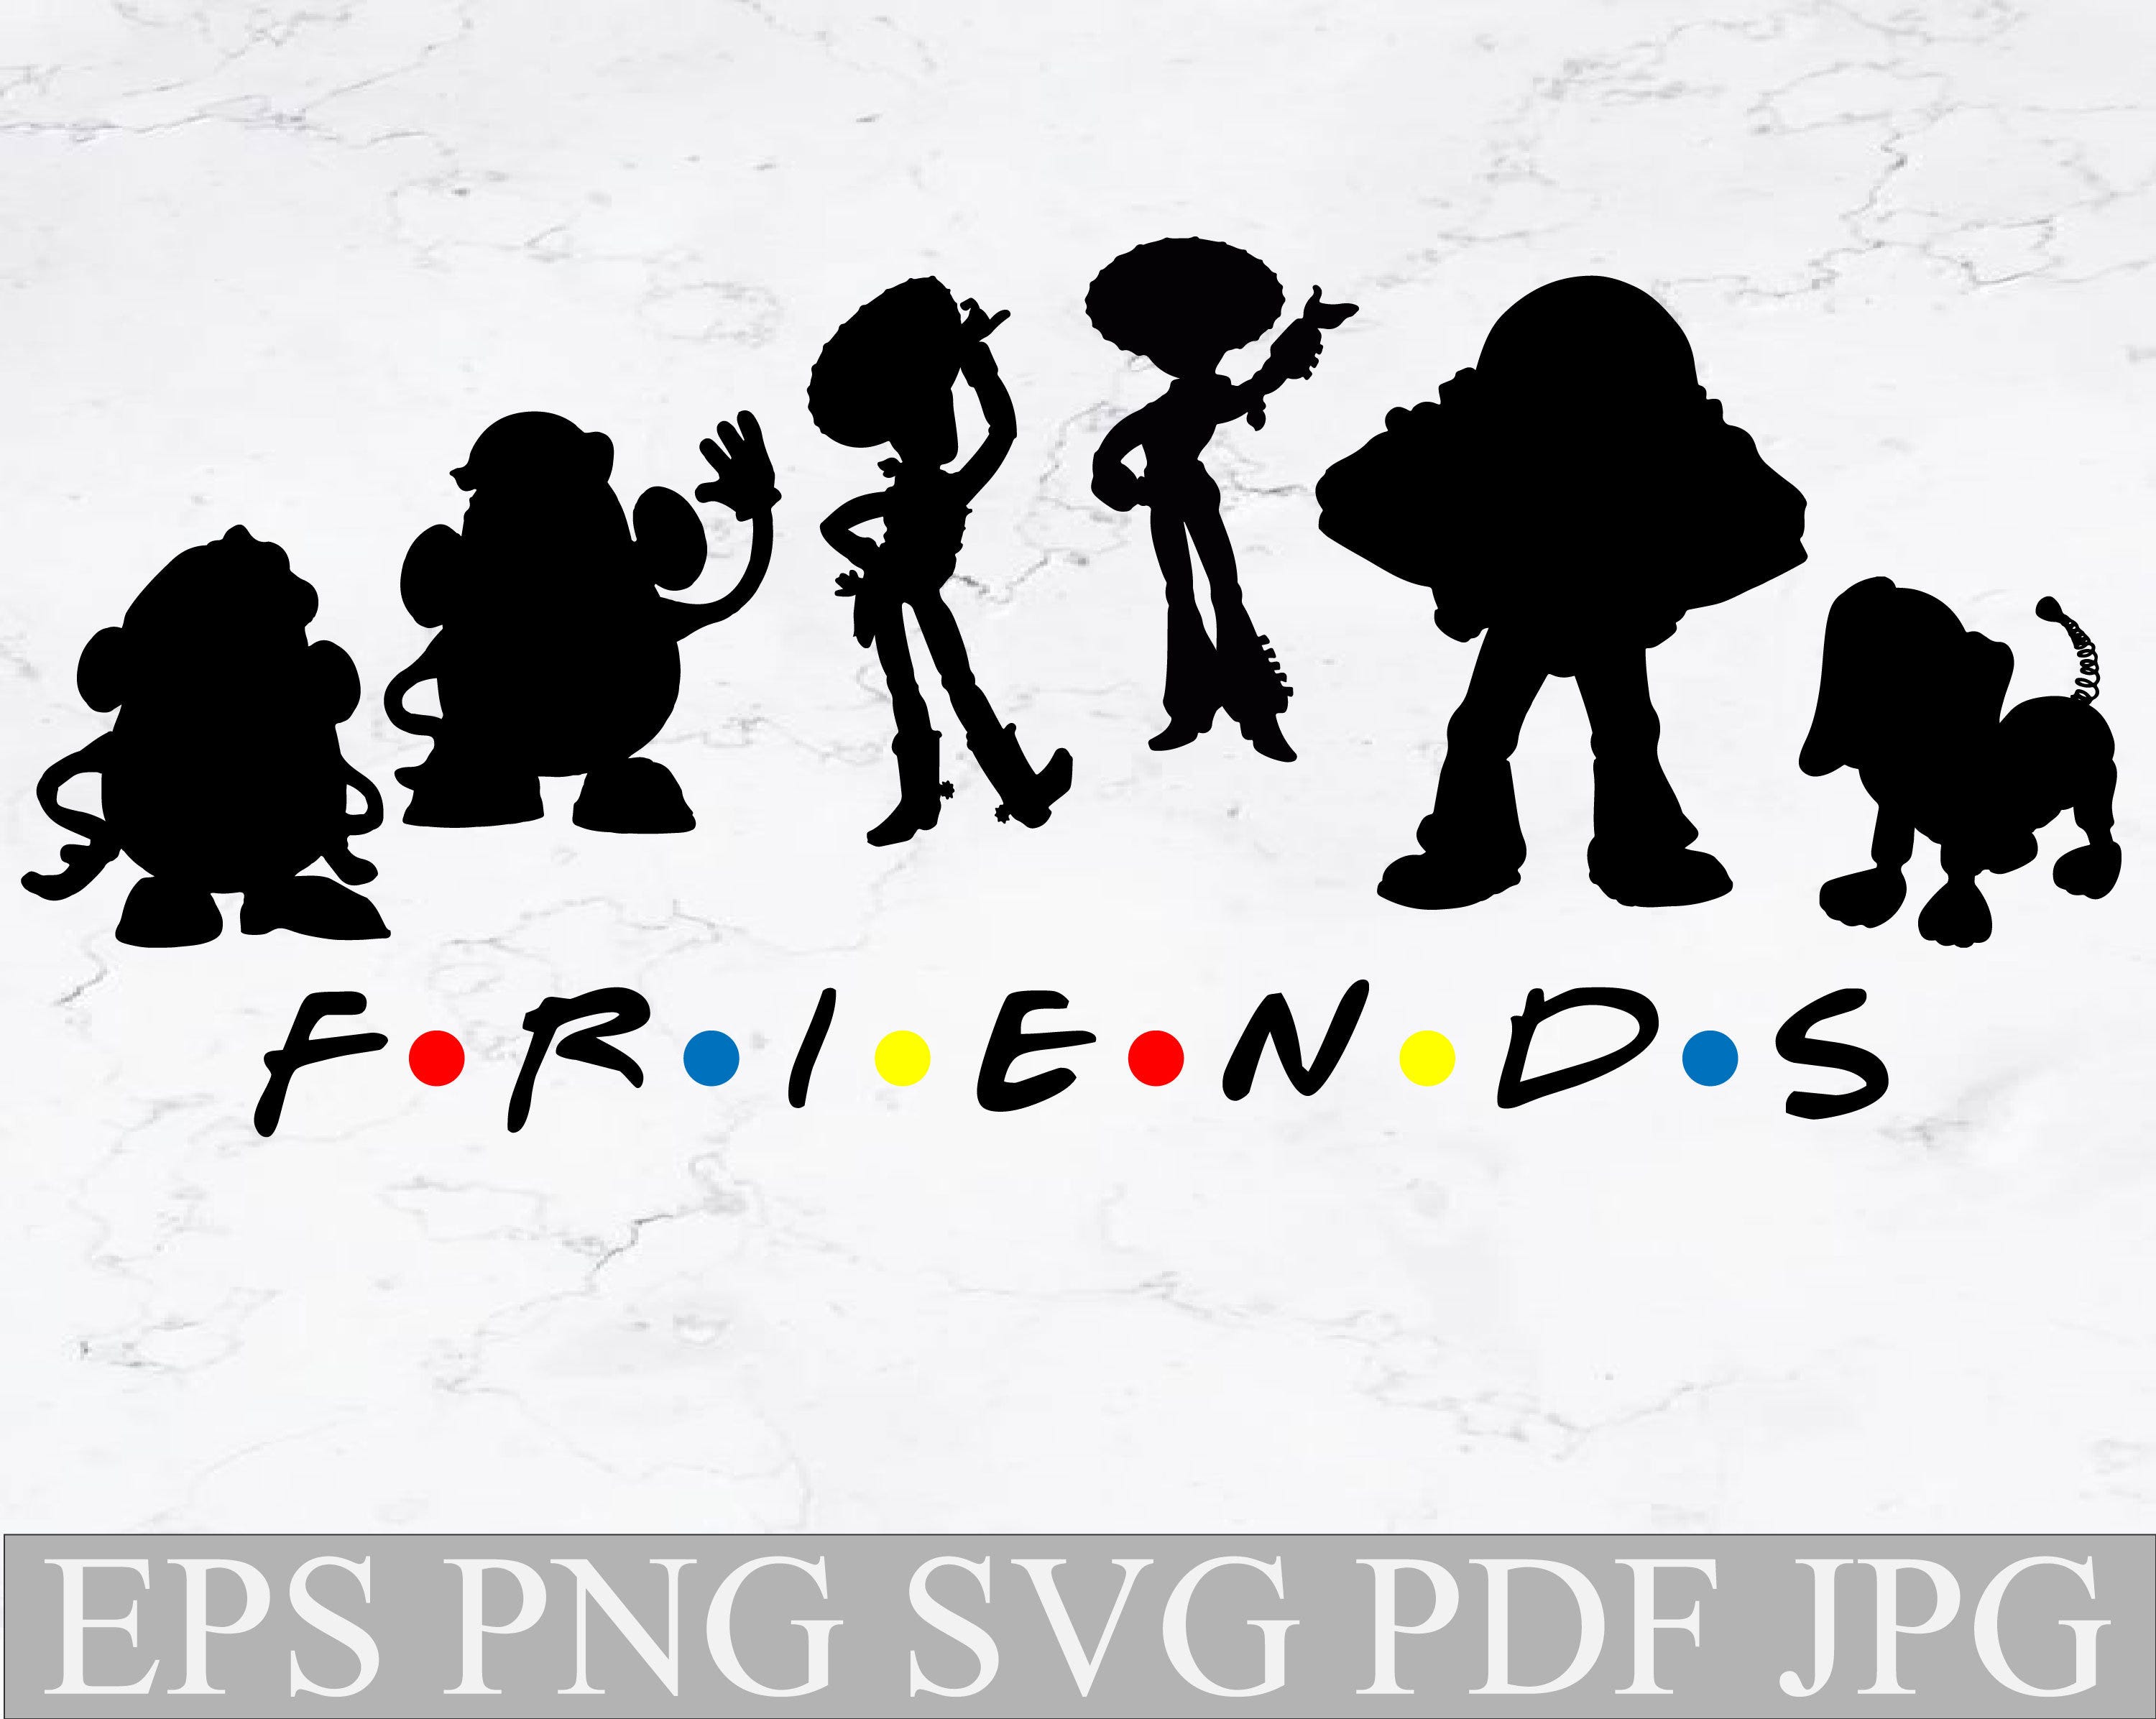 Friends svg, Friends Toy Story svg,Toy Story svg,Toy Story svg file for cut,Toy Story svg cricut,Toy Story svg silhouette,Friends logo